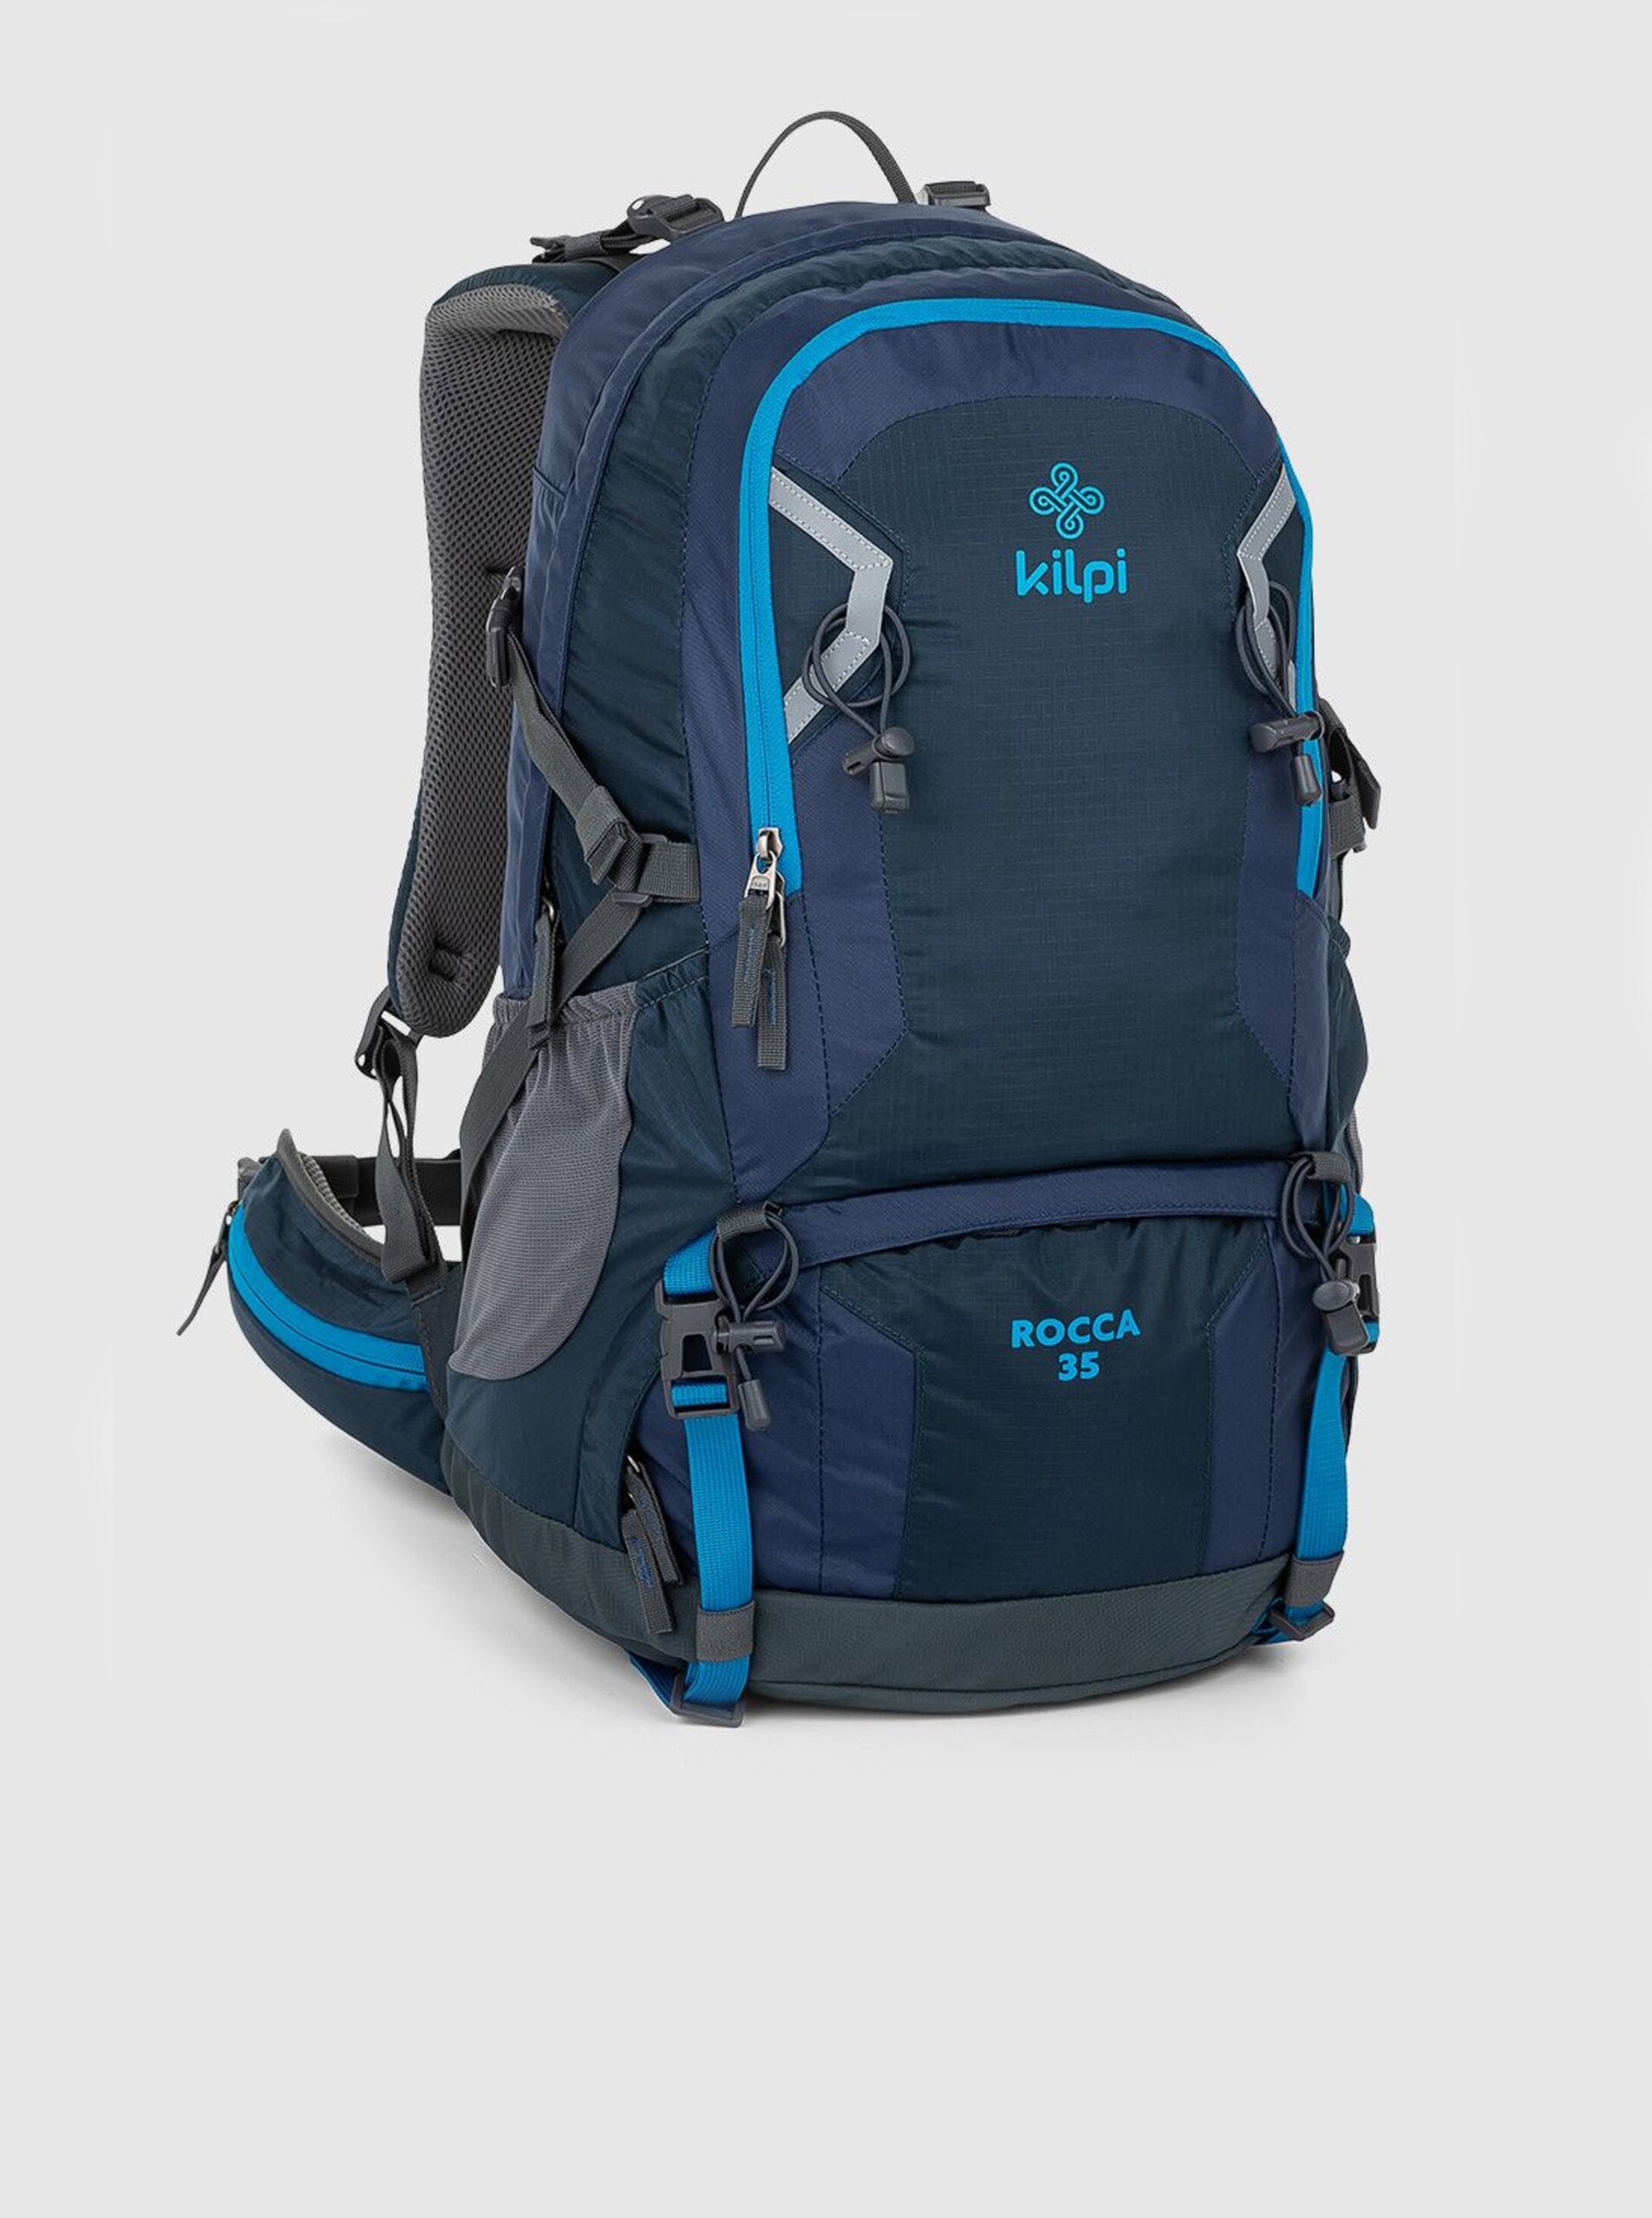 E-shop Tmavě modrý unisex sportovní batoh Kilpi ROCCA (35 l)